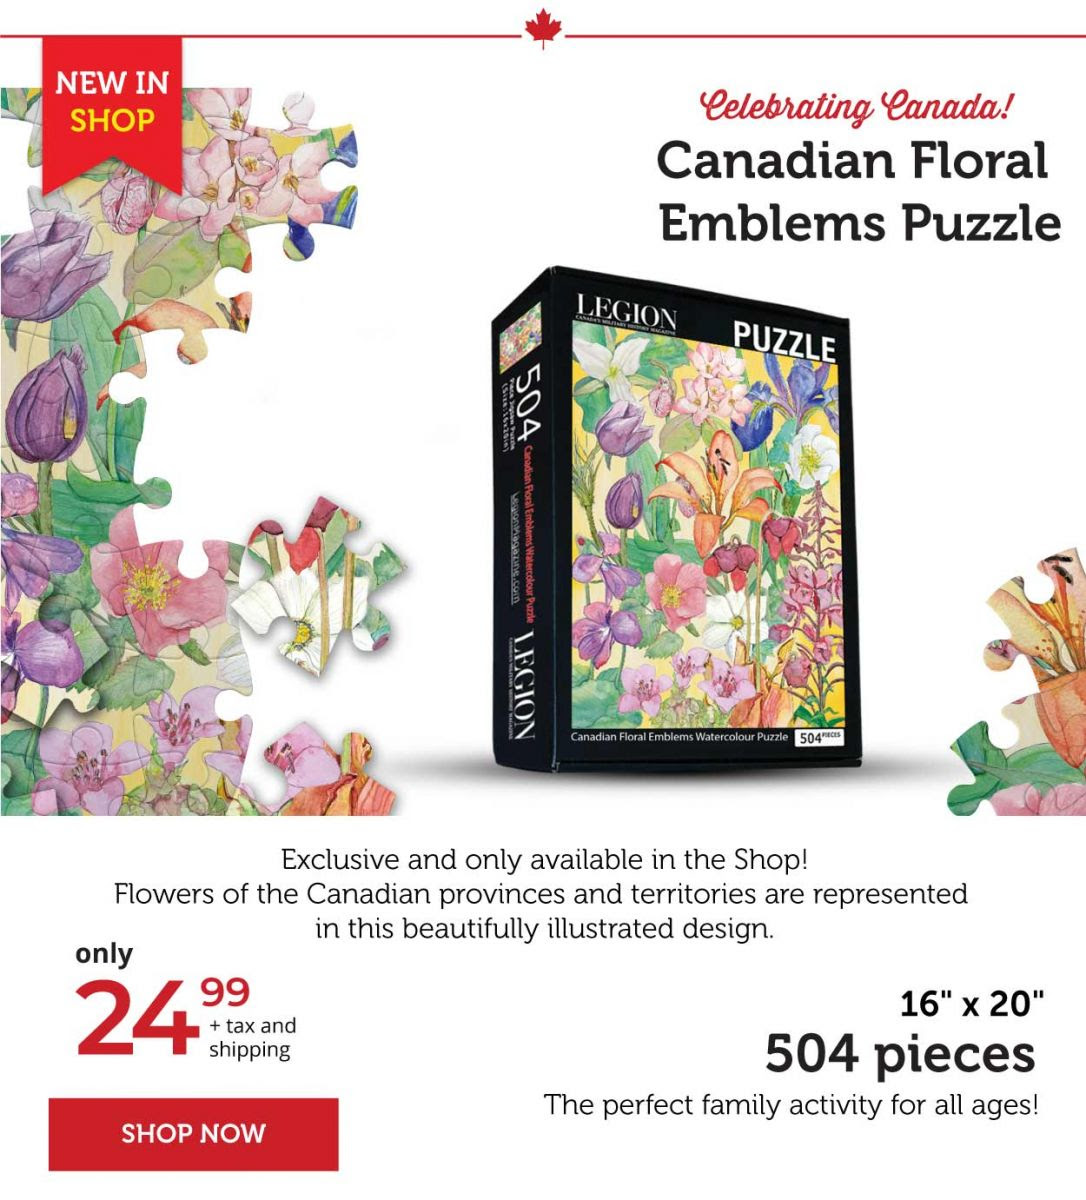 Canadian floral emblems puzzle